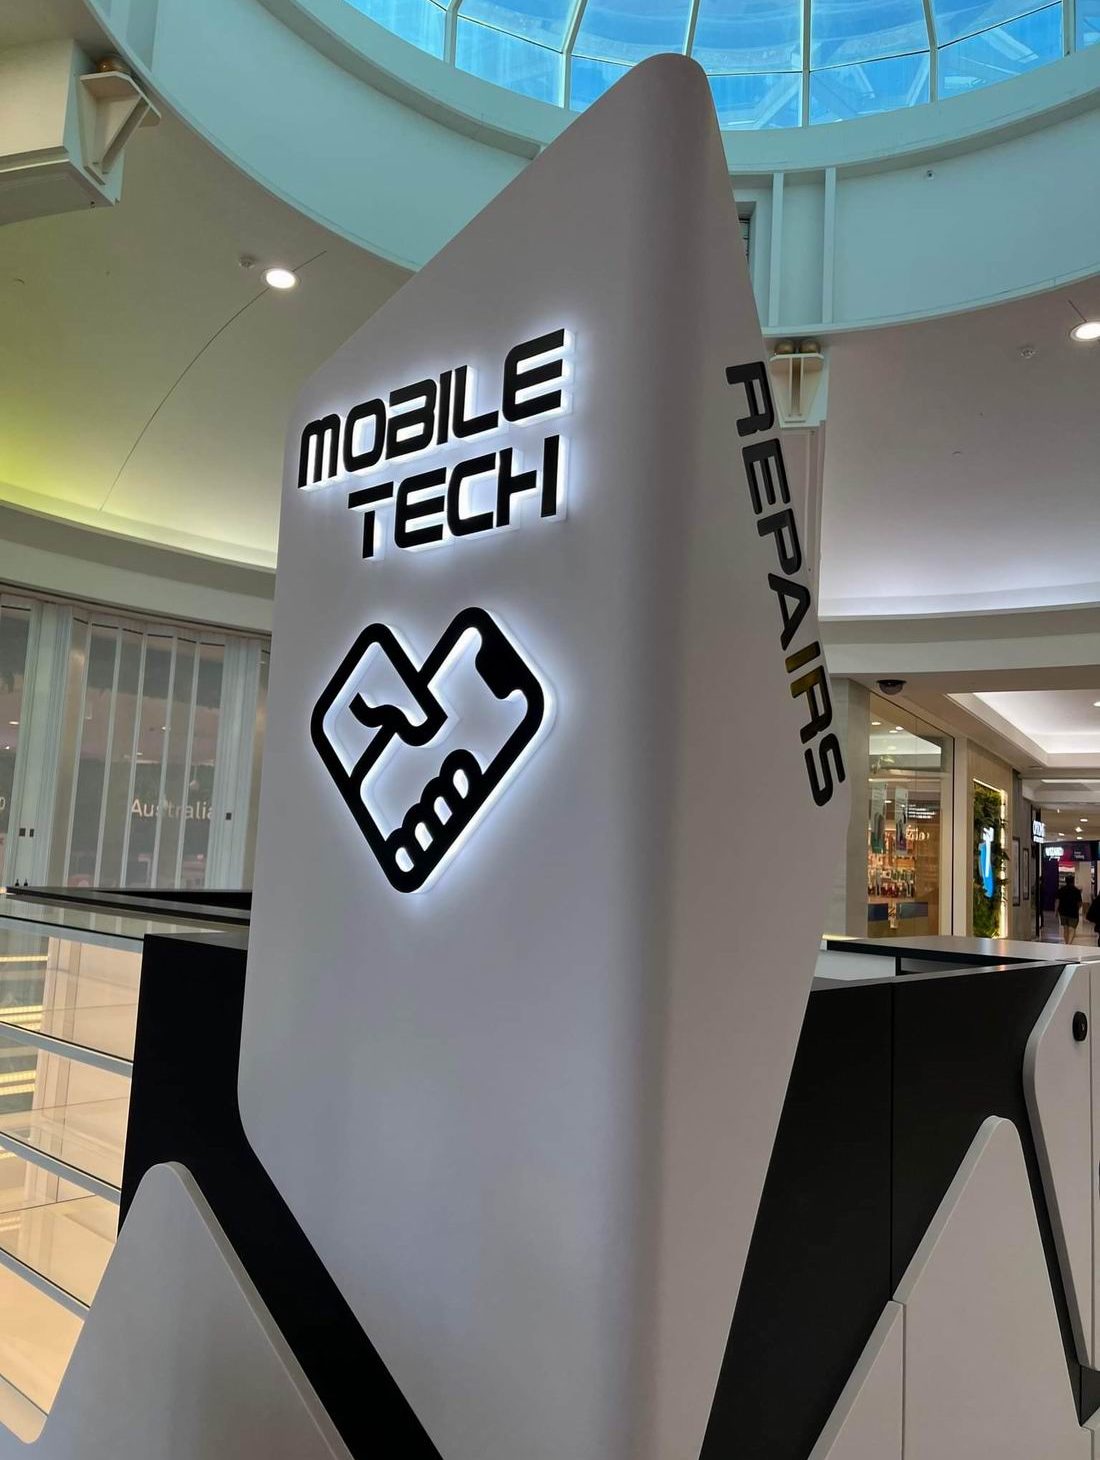 Mobile Tech Kiosk Galleria Shopping Center